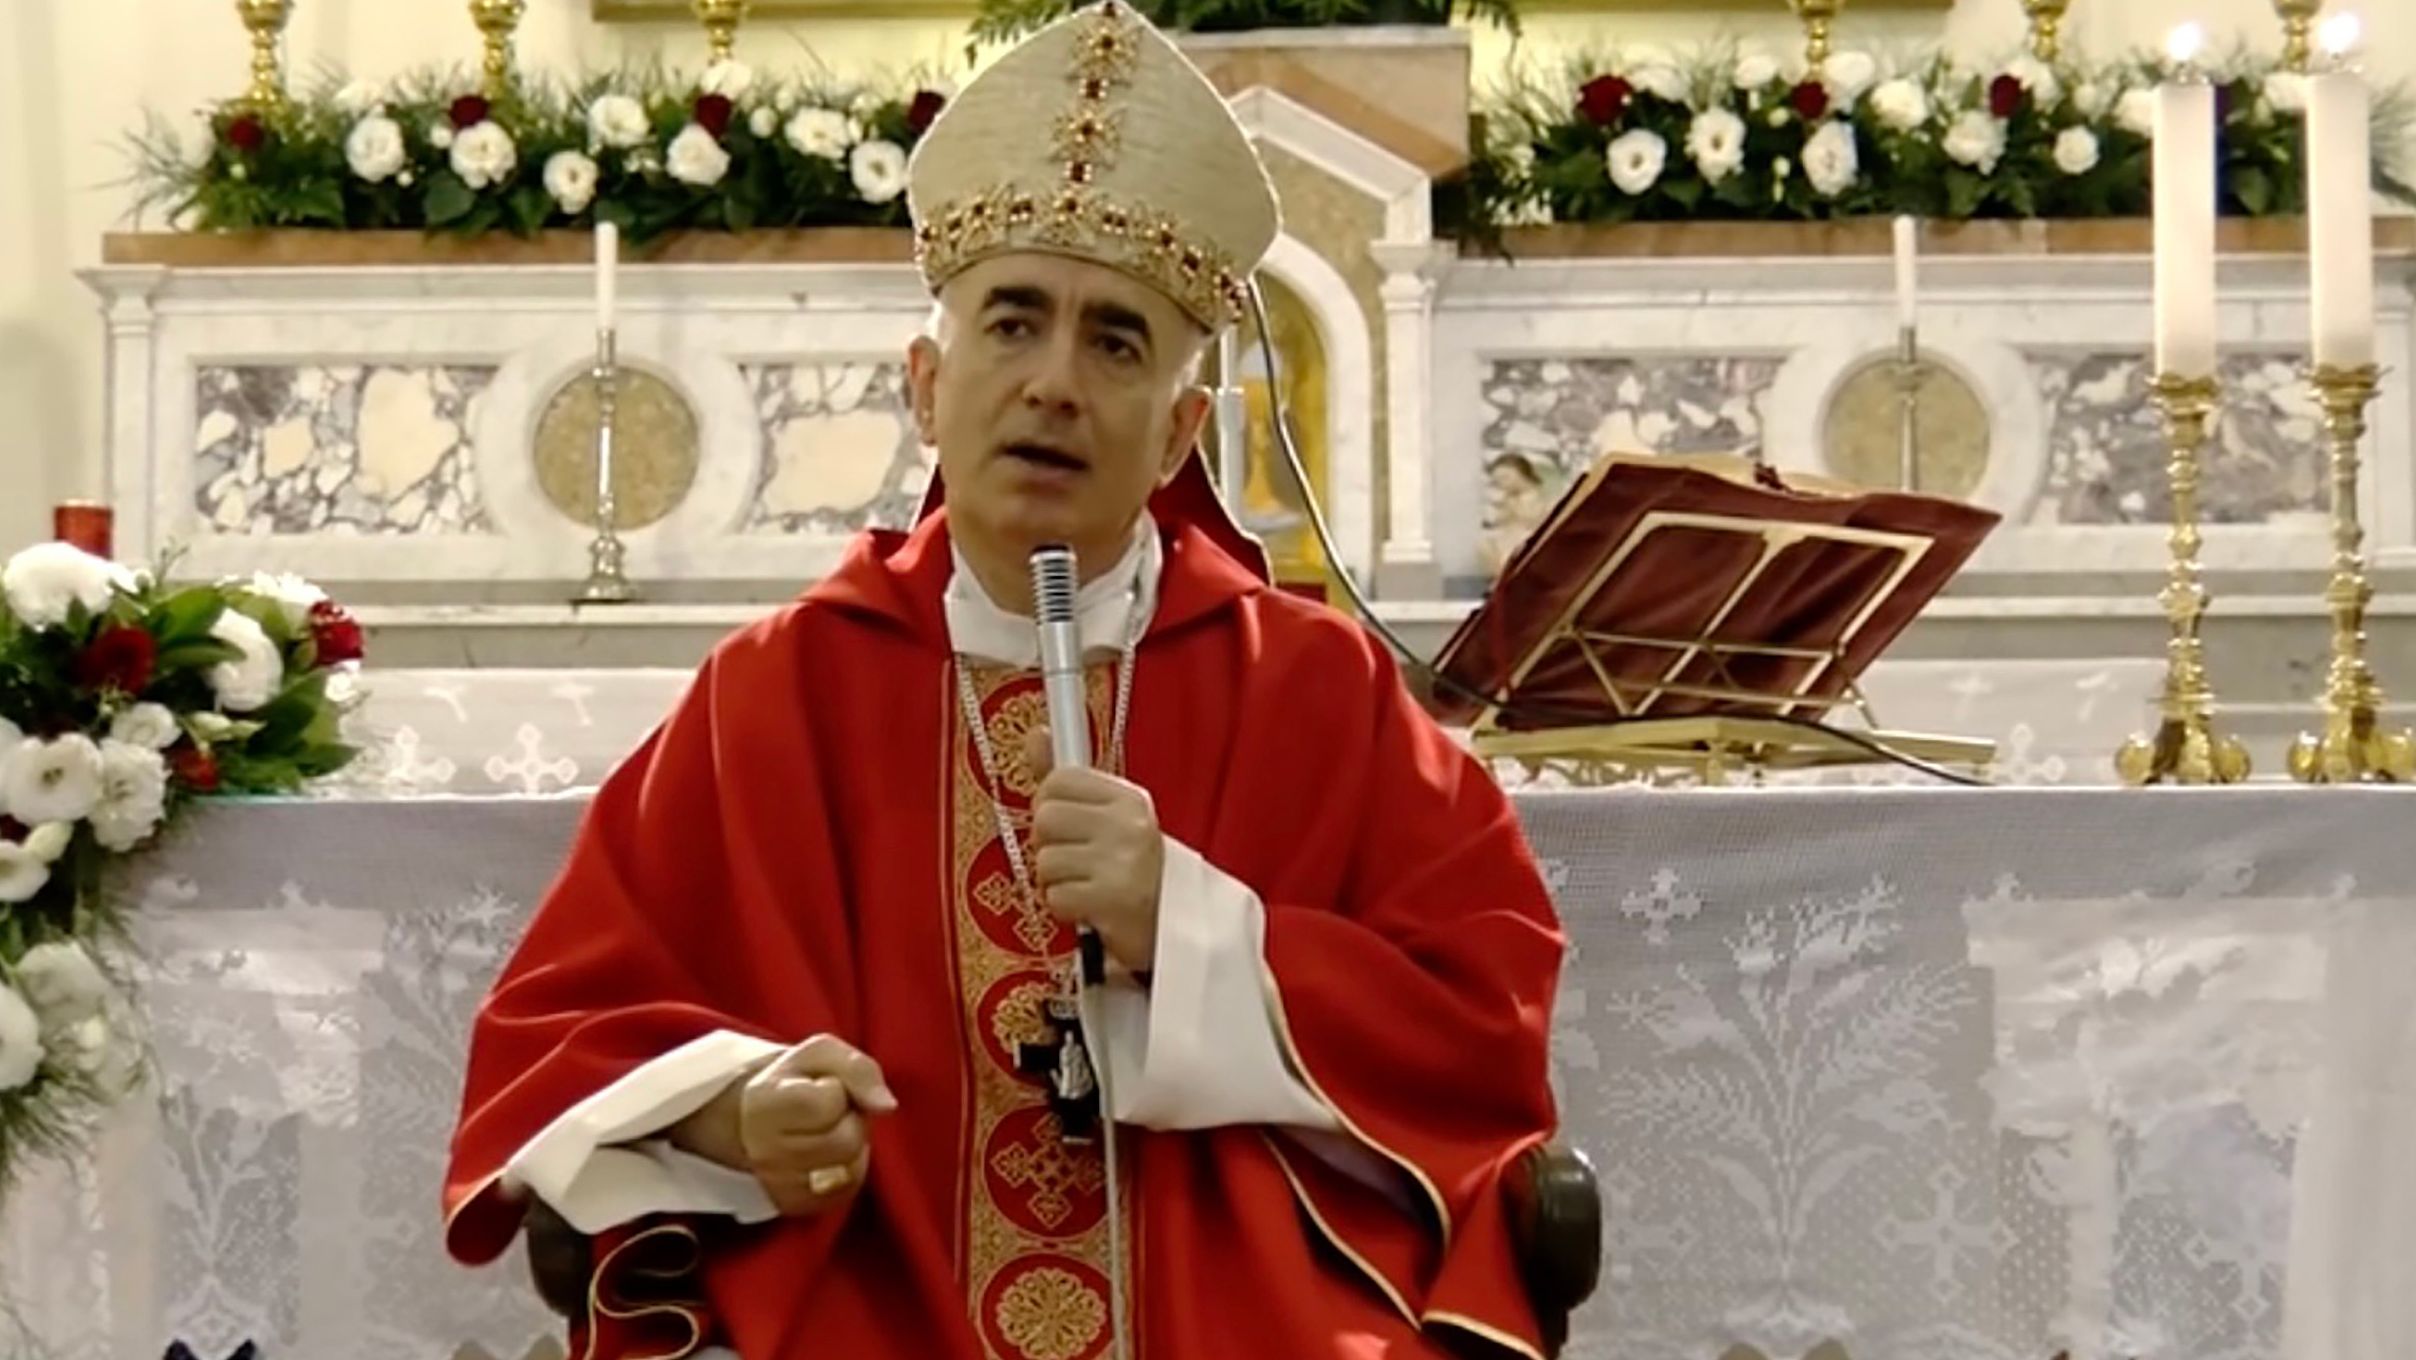 "No, Santa Claus does not exist," said Antonio Staglianò, bishop of Noto in Sicily, Italy.